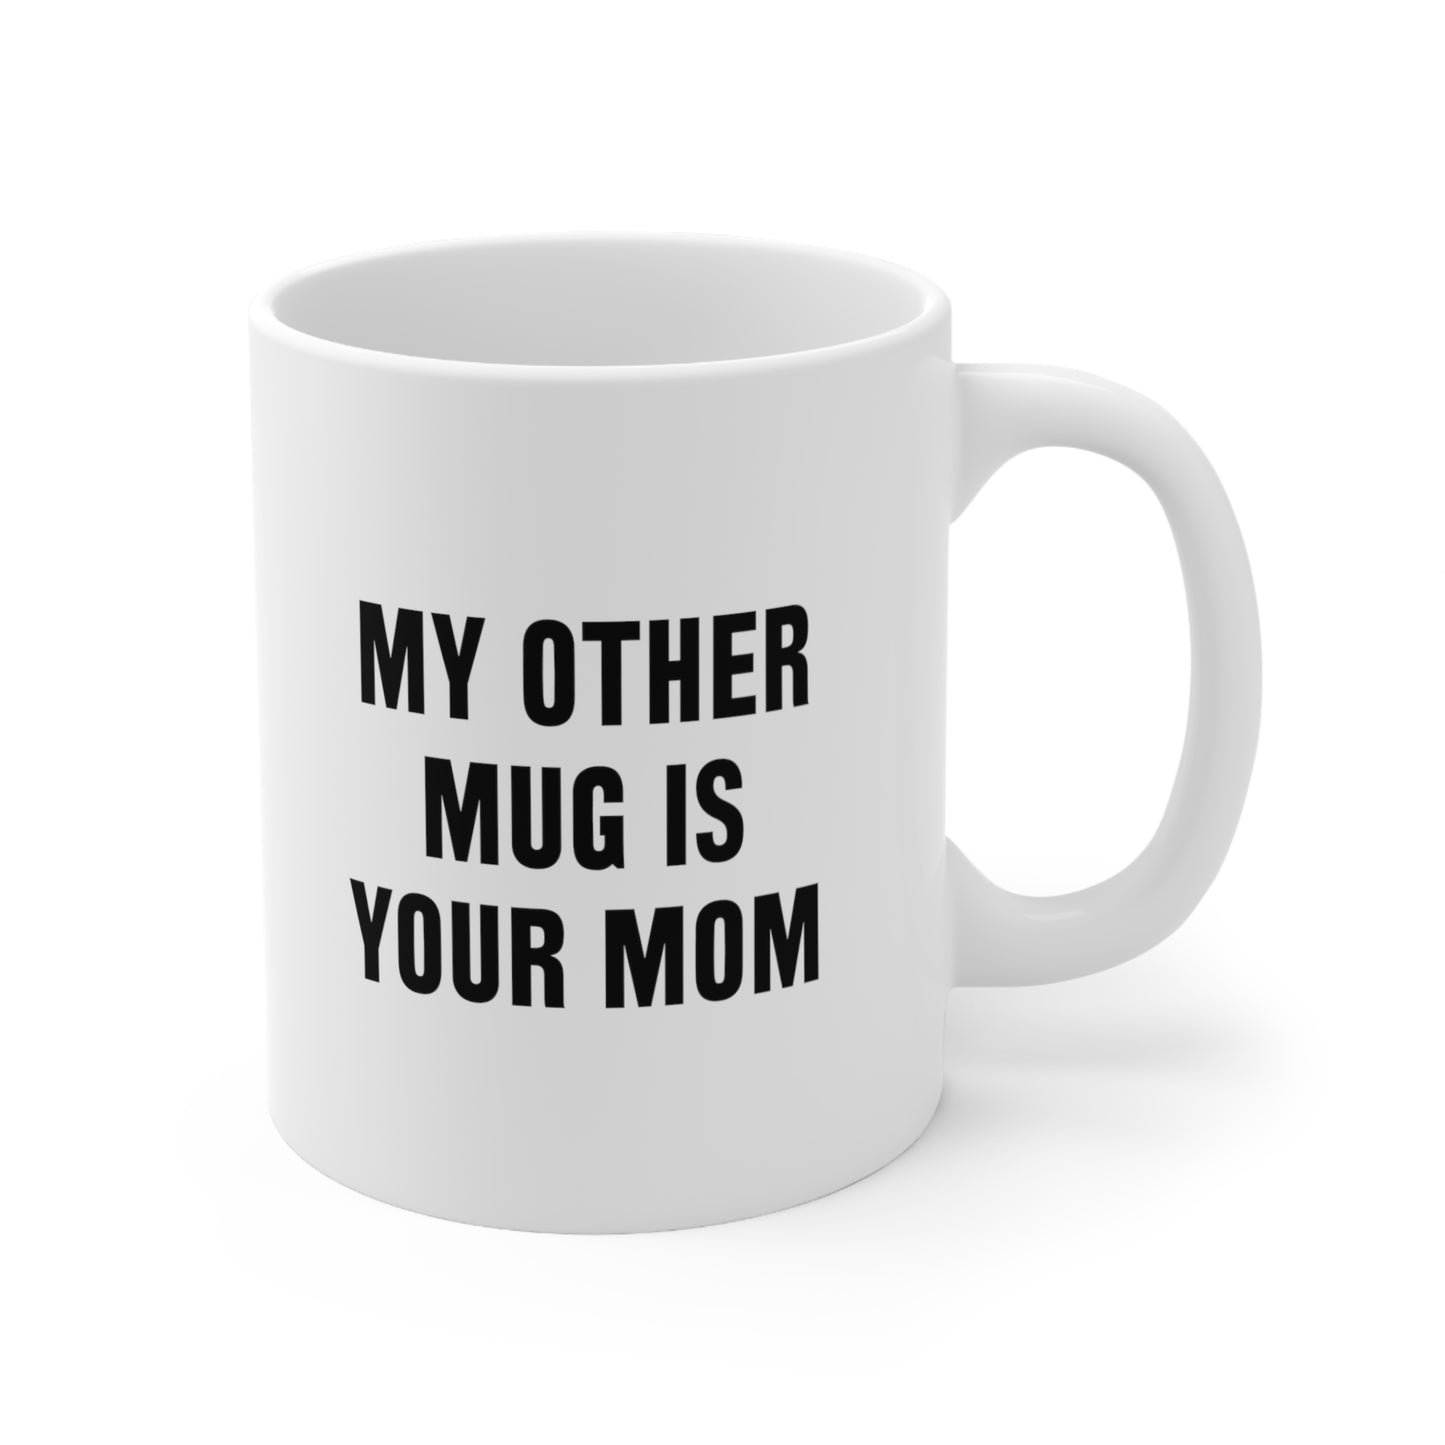 My Other Mug Is Your Mom Coffee Mug 11oz